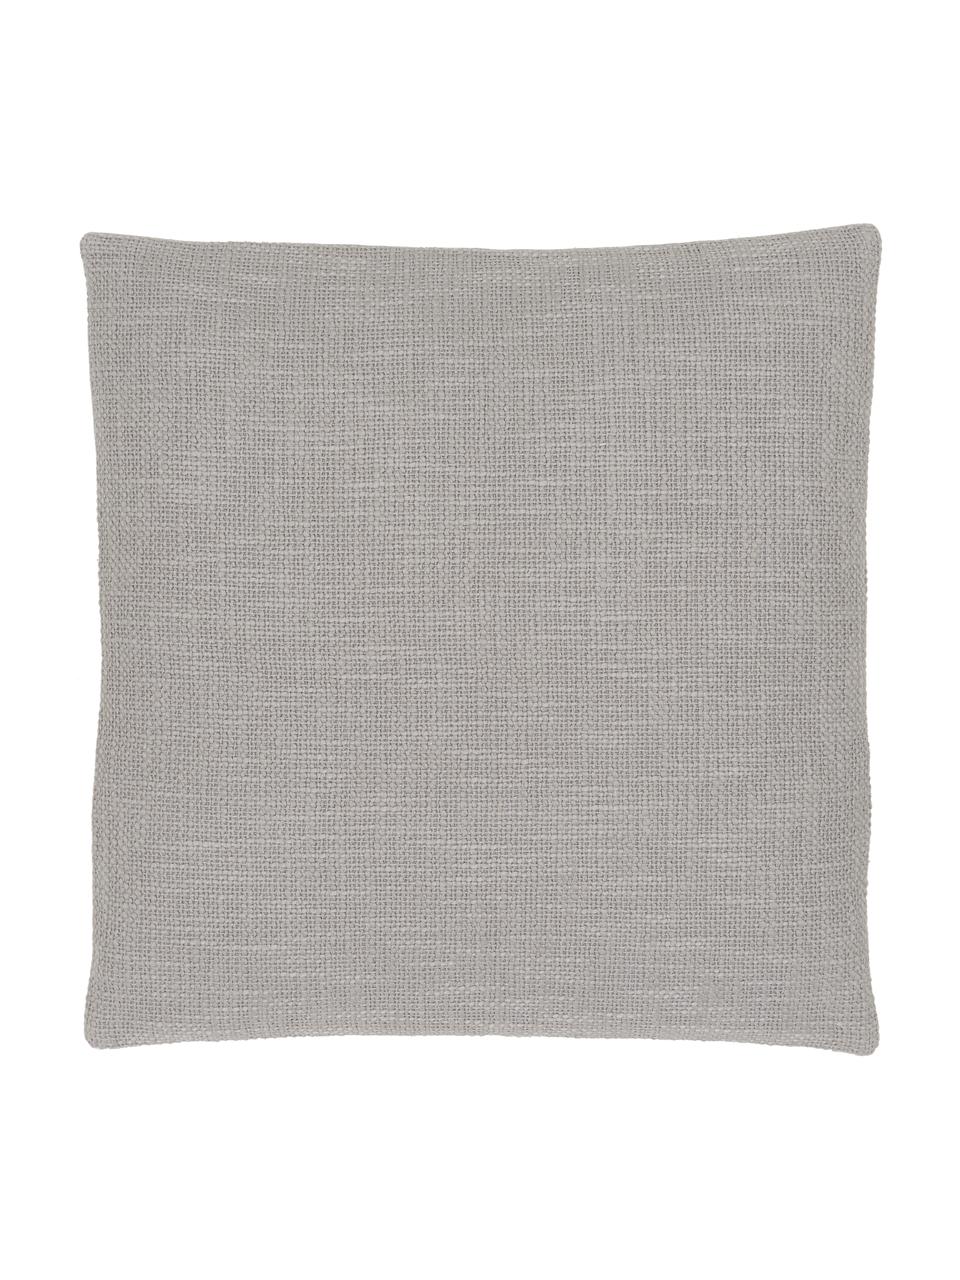 Poszewka na poduszkę Anise, 100% bawełna, Szary, S 45 x D 45 cm